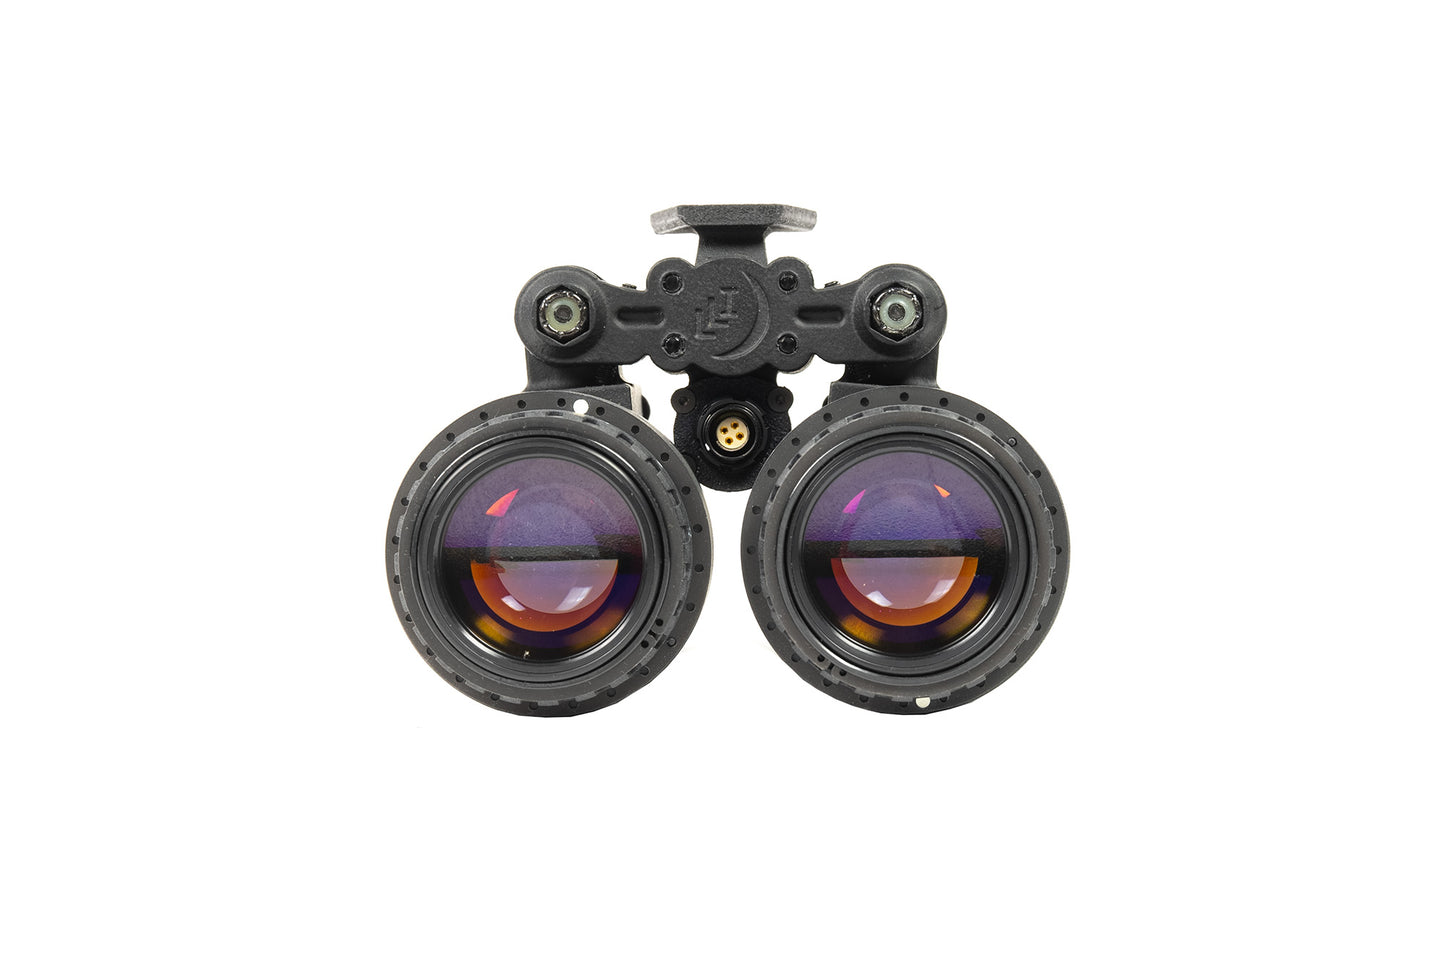 Low Light Innovations LLUL-21 Binocular NVG